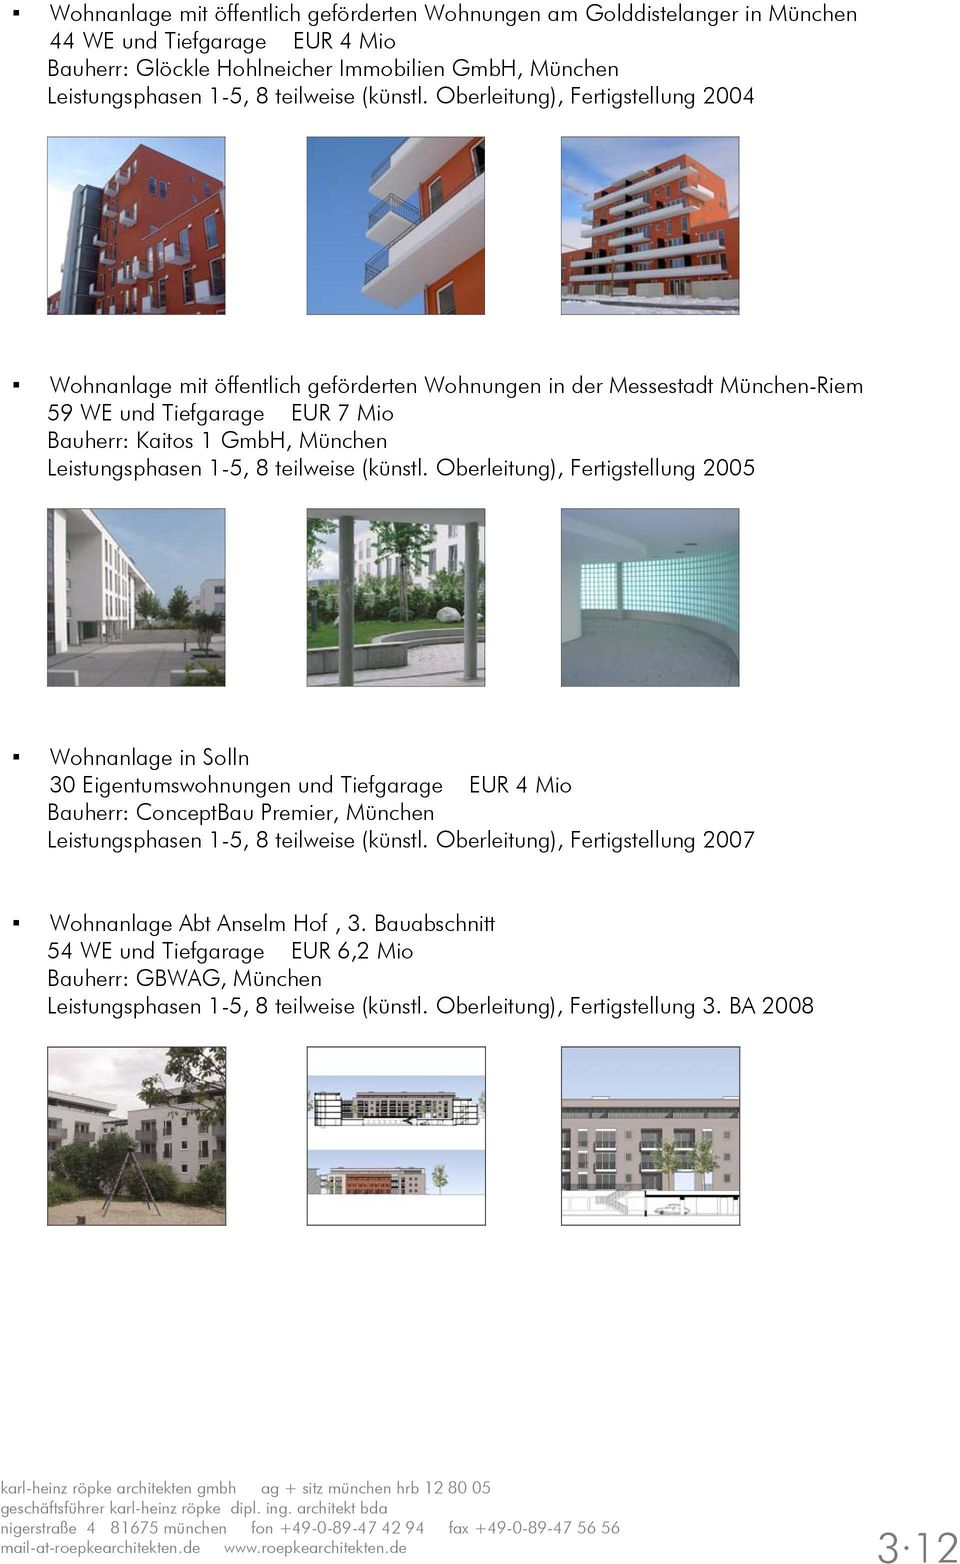 Oberleitung), Fertigstellung 2004 Wohnanlage mit öffentlich geförderten Wohnungen in der Messestadt München-Riem 59 WE und Tiefgarage EUR 7 Mio Bauherr: Kaitos 1 GmbH, München Leistungsphasen 1-5, 8